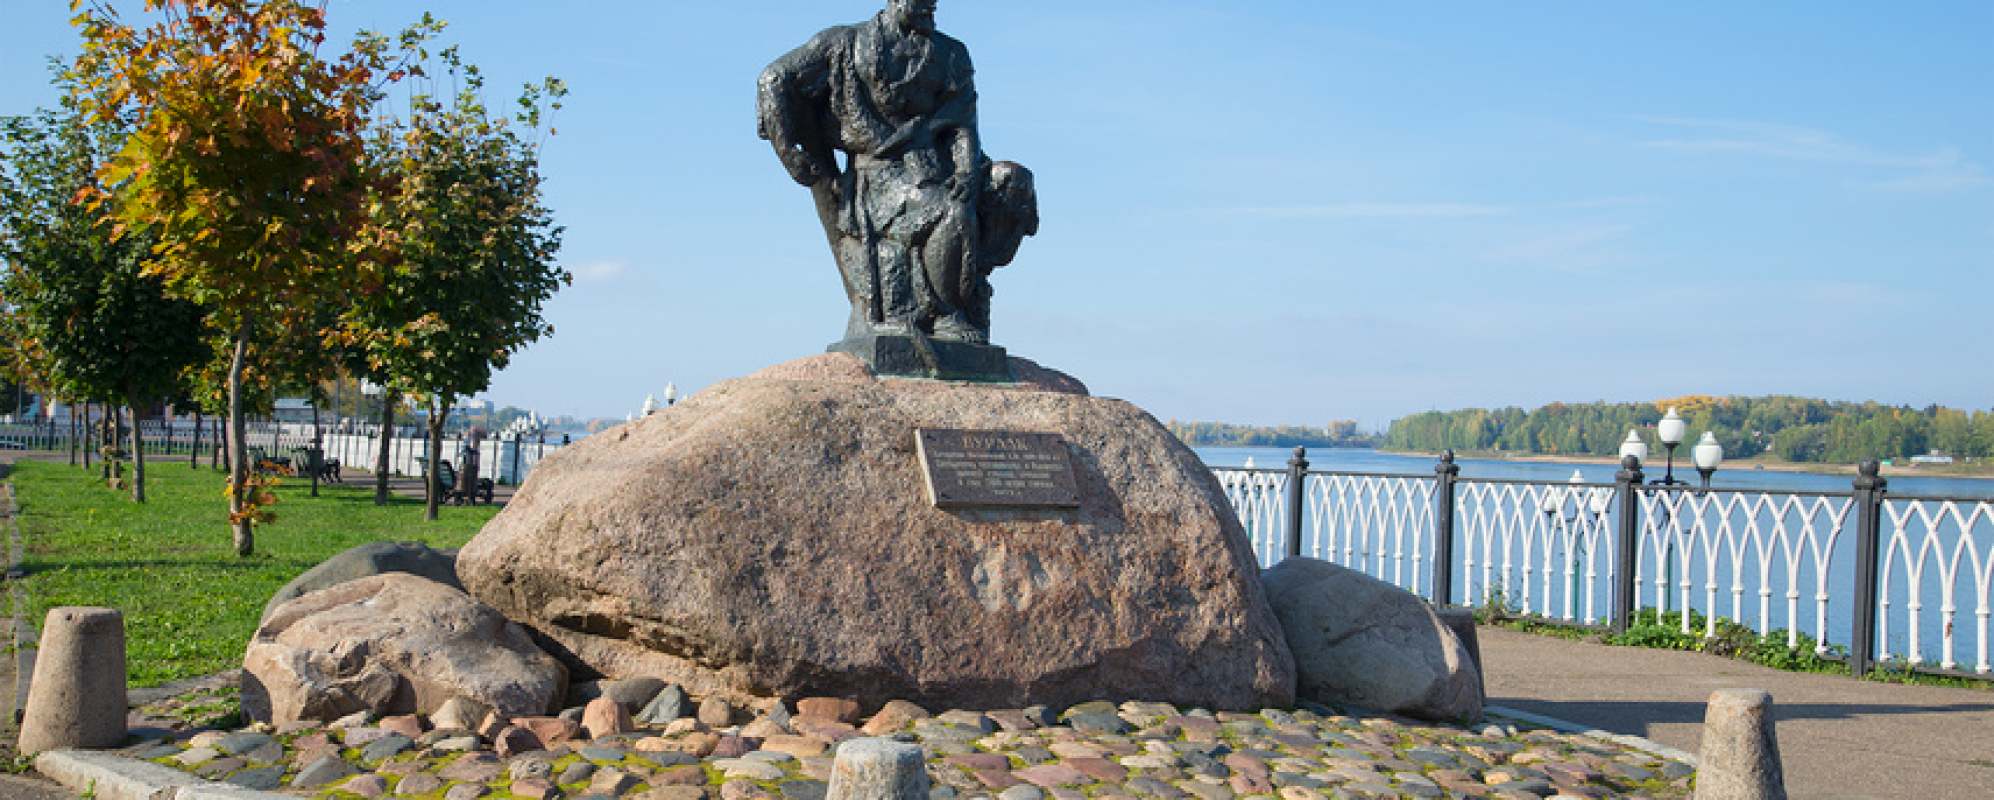 Фотографии памятника Памятник бурлаку